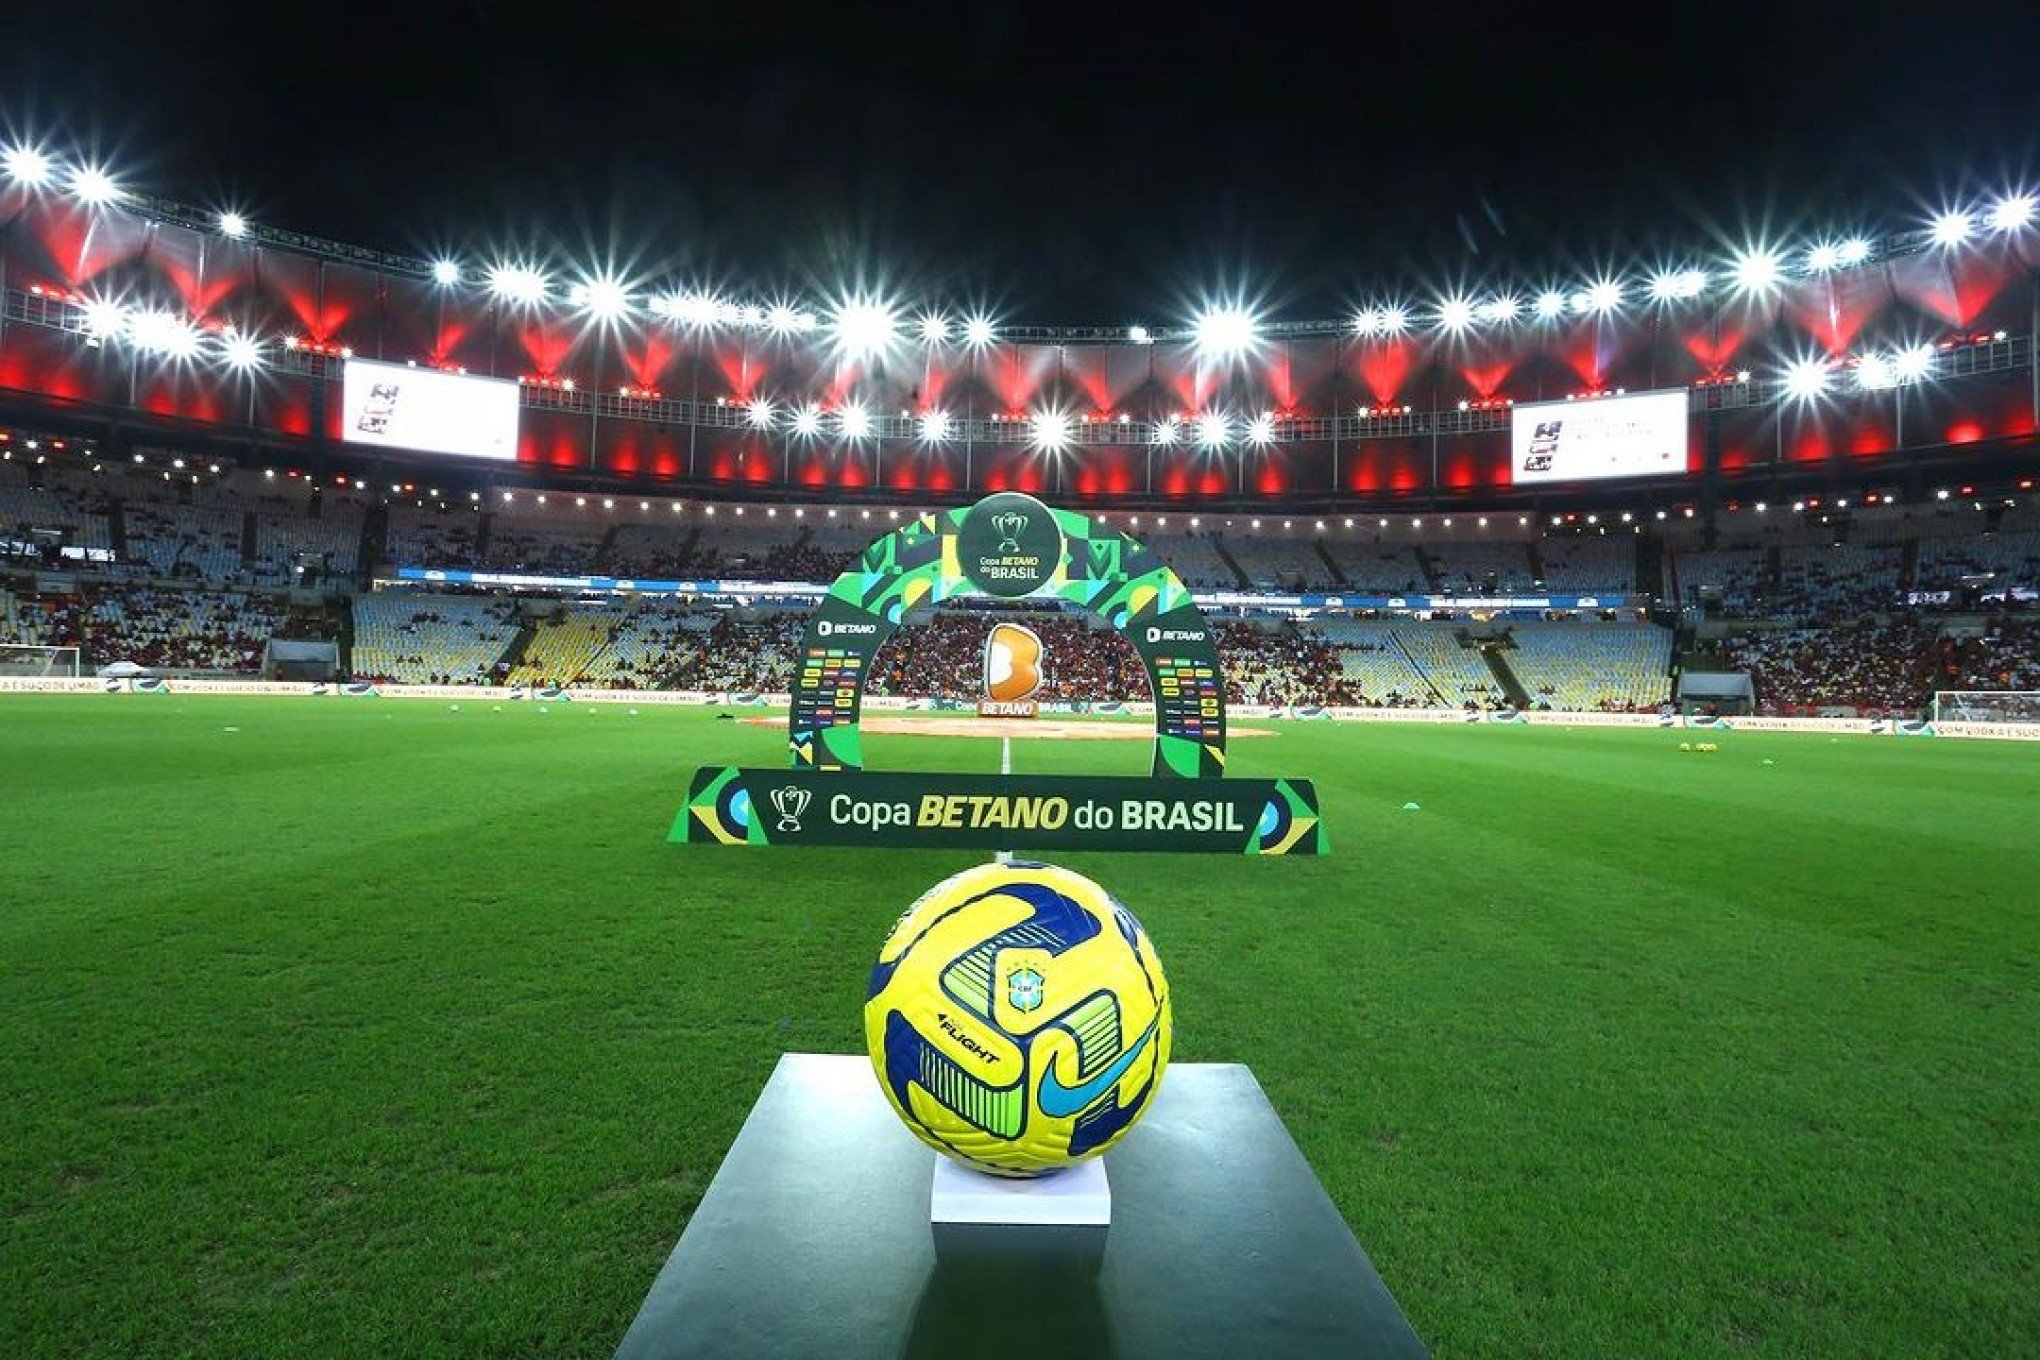 Primeiro jogo da semifinal da Copa do Brasil contra o Flamengo será na Arena